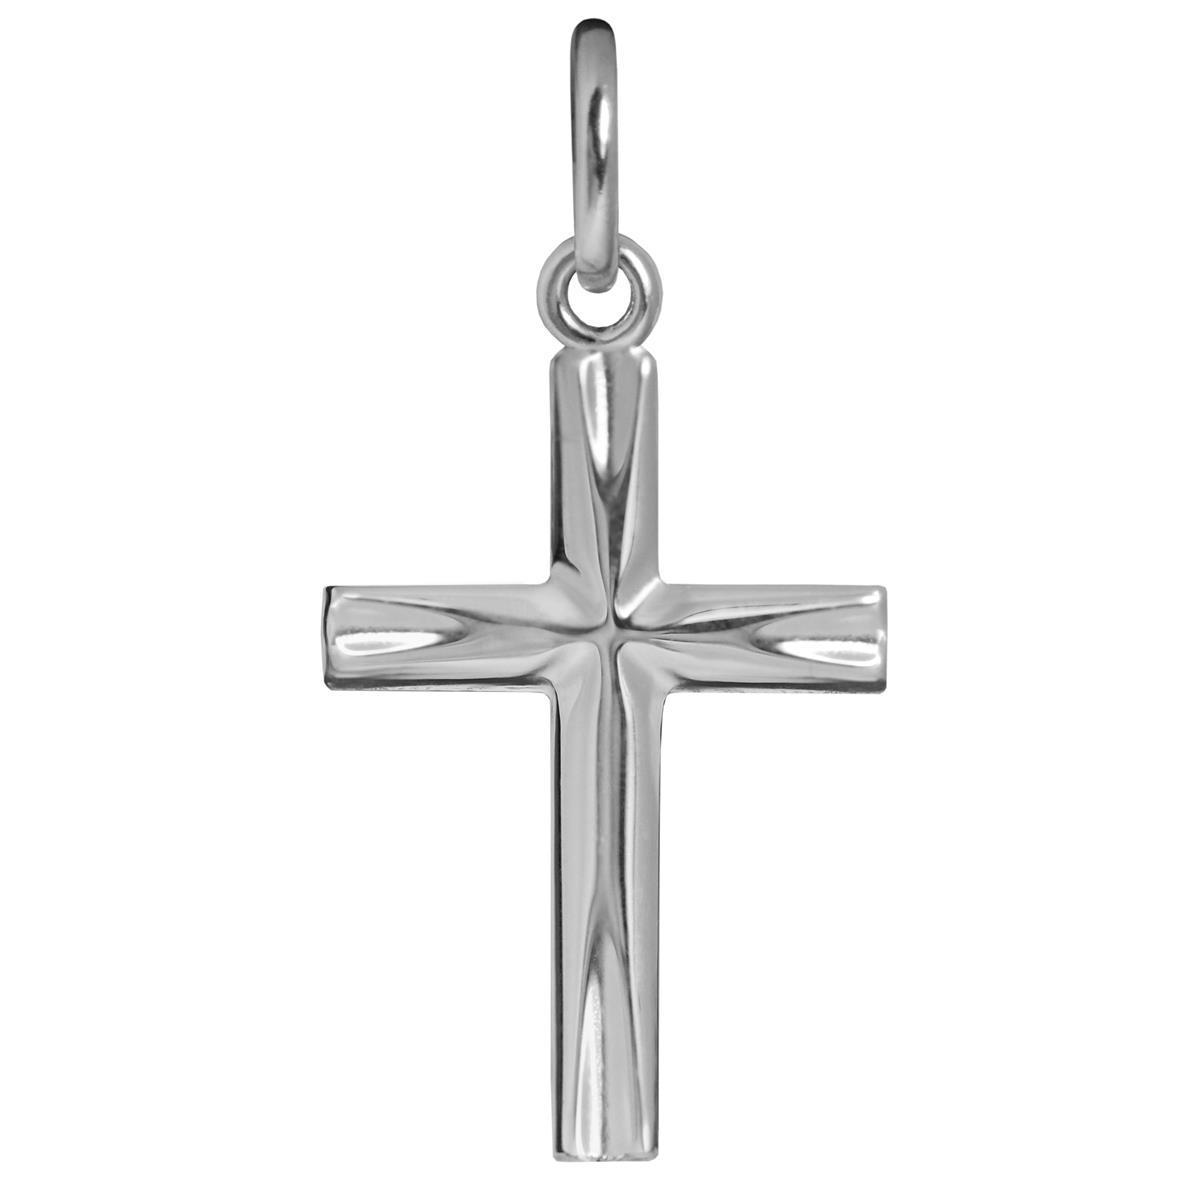 Silberner Anhänger kleines Kreuz 17 mm glänzend, an den Enden elegant eingekerbt STERLING SILBER 925